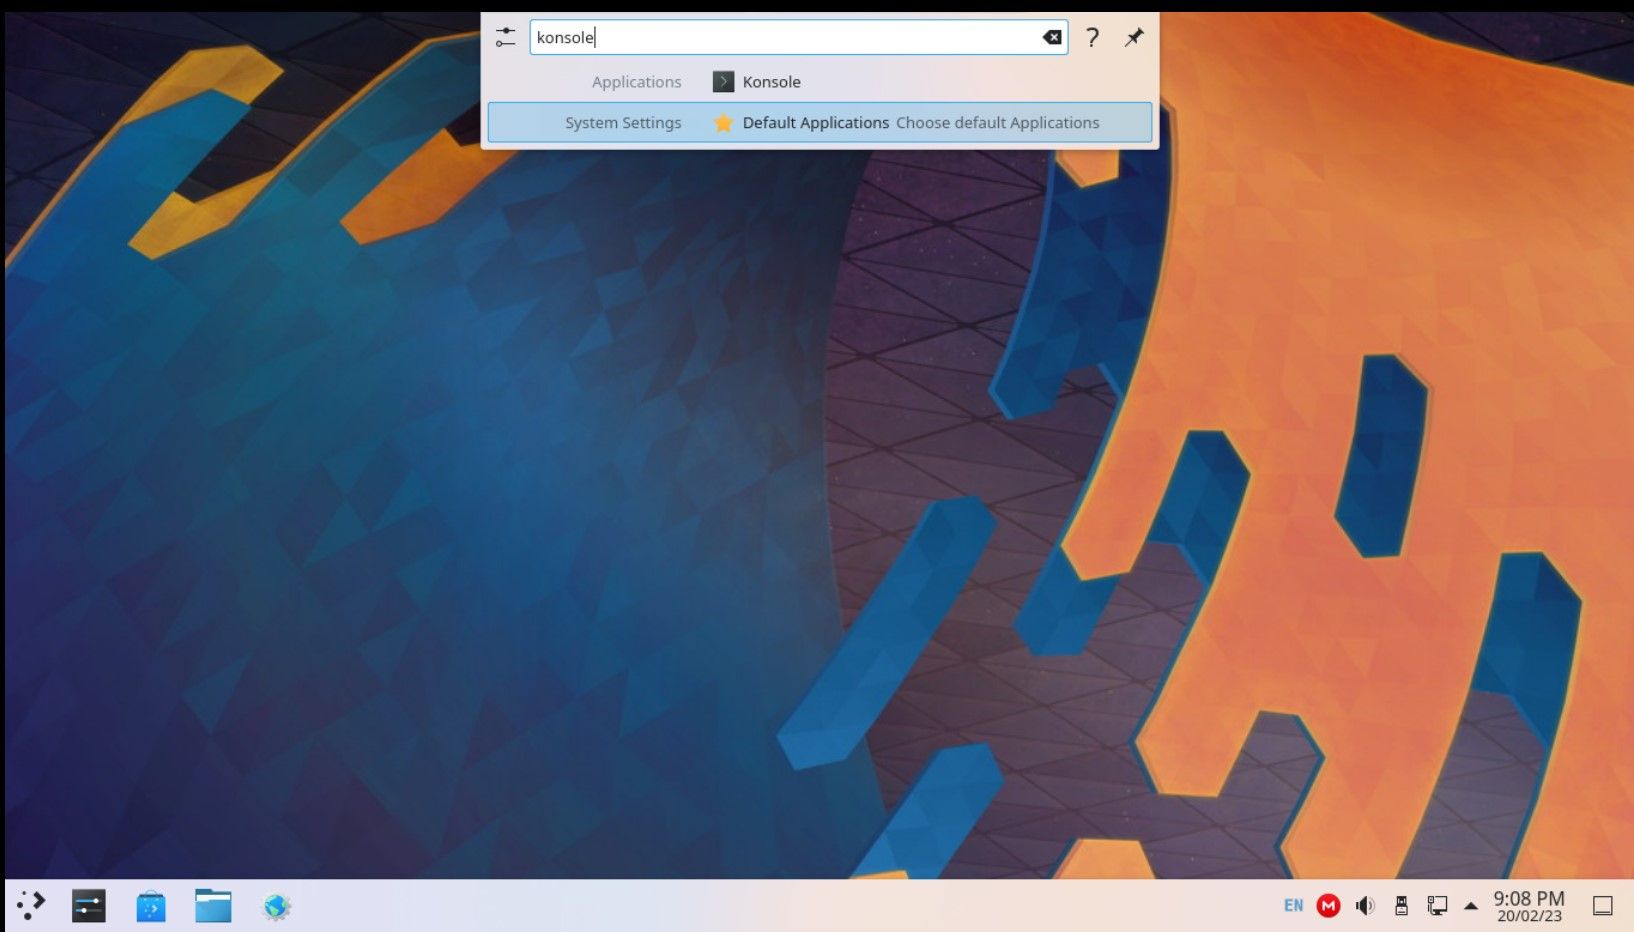 KRunner's snippet on KDE Plasma desktop with icons